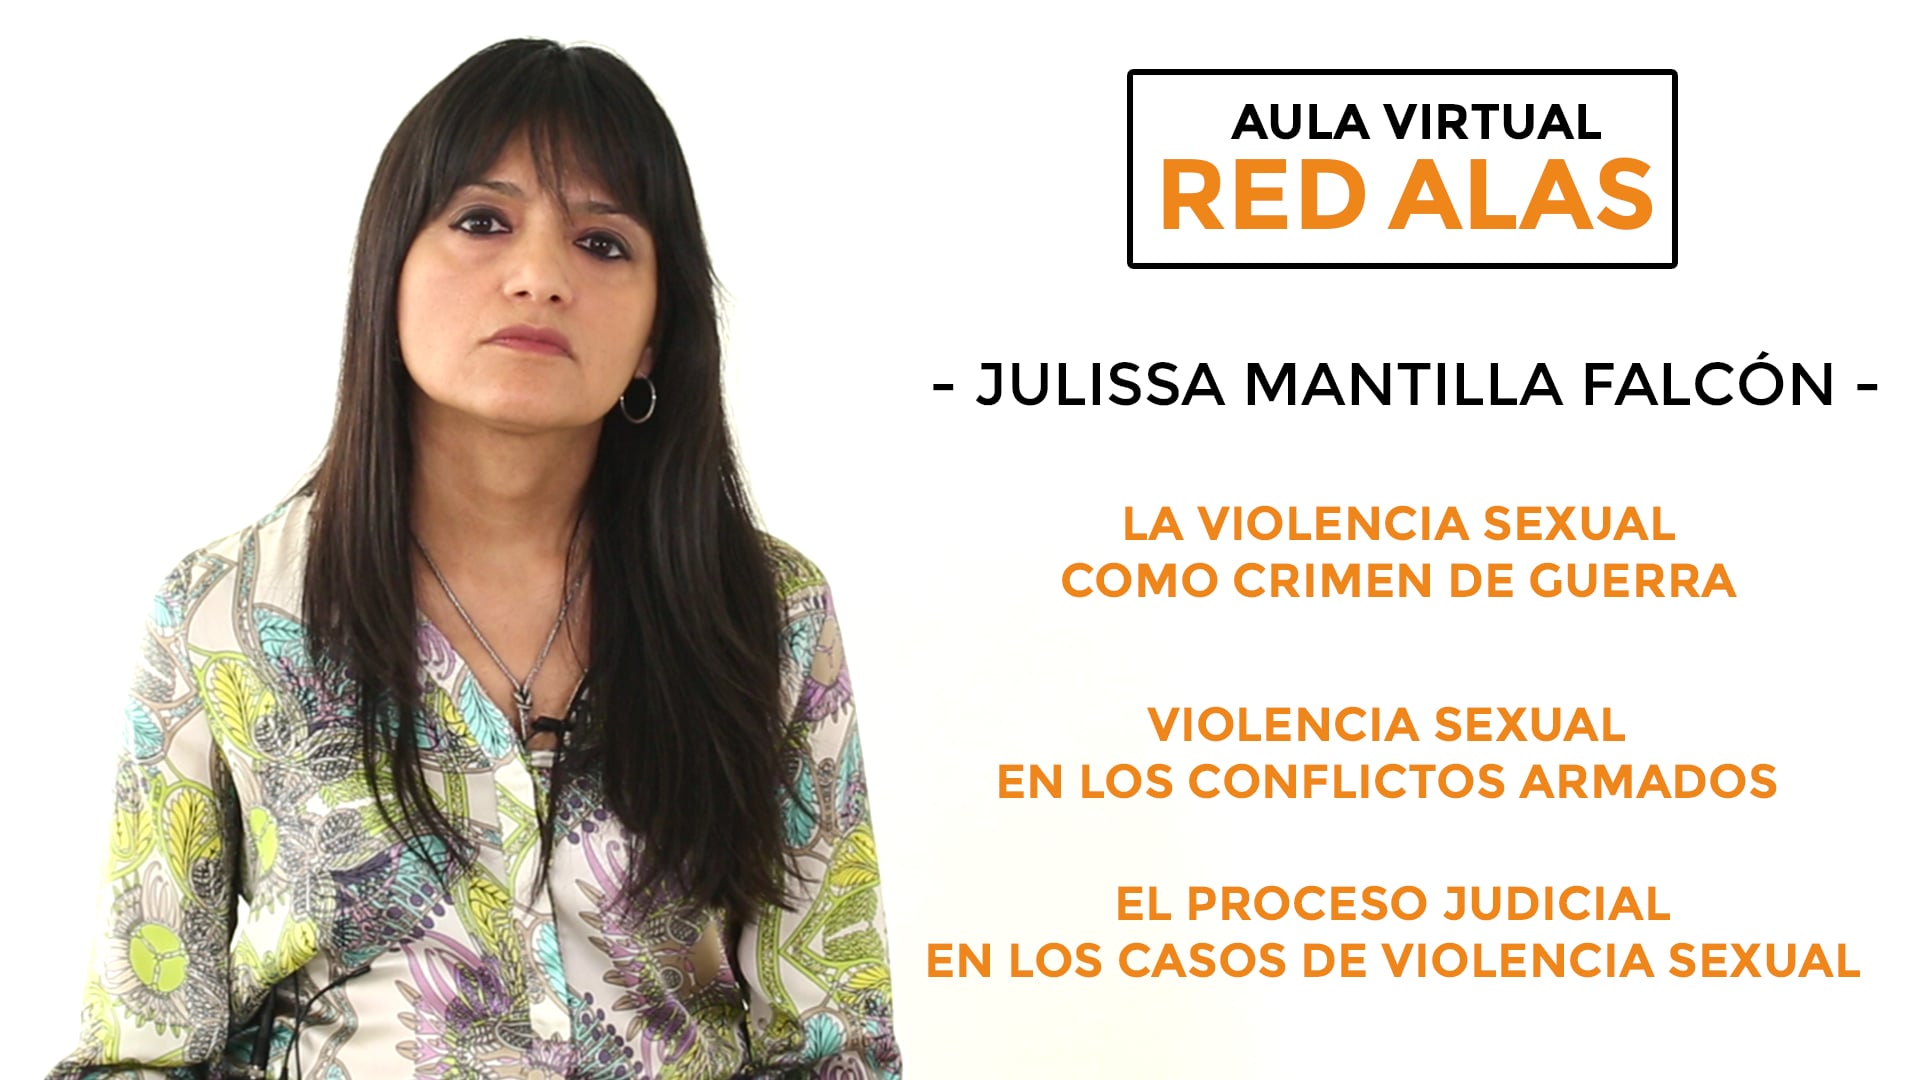 EL PROCESO JUDICIAL EN LOS CASOS DE VIOLENCIA SEXUAL - Julissa Mantilla Falcón